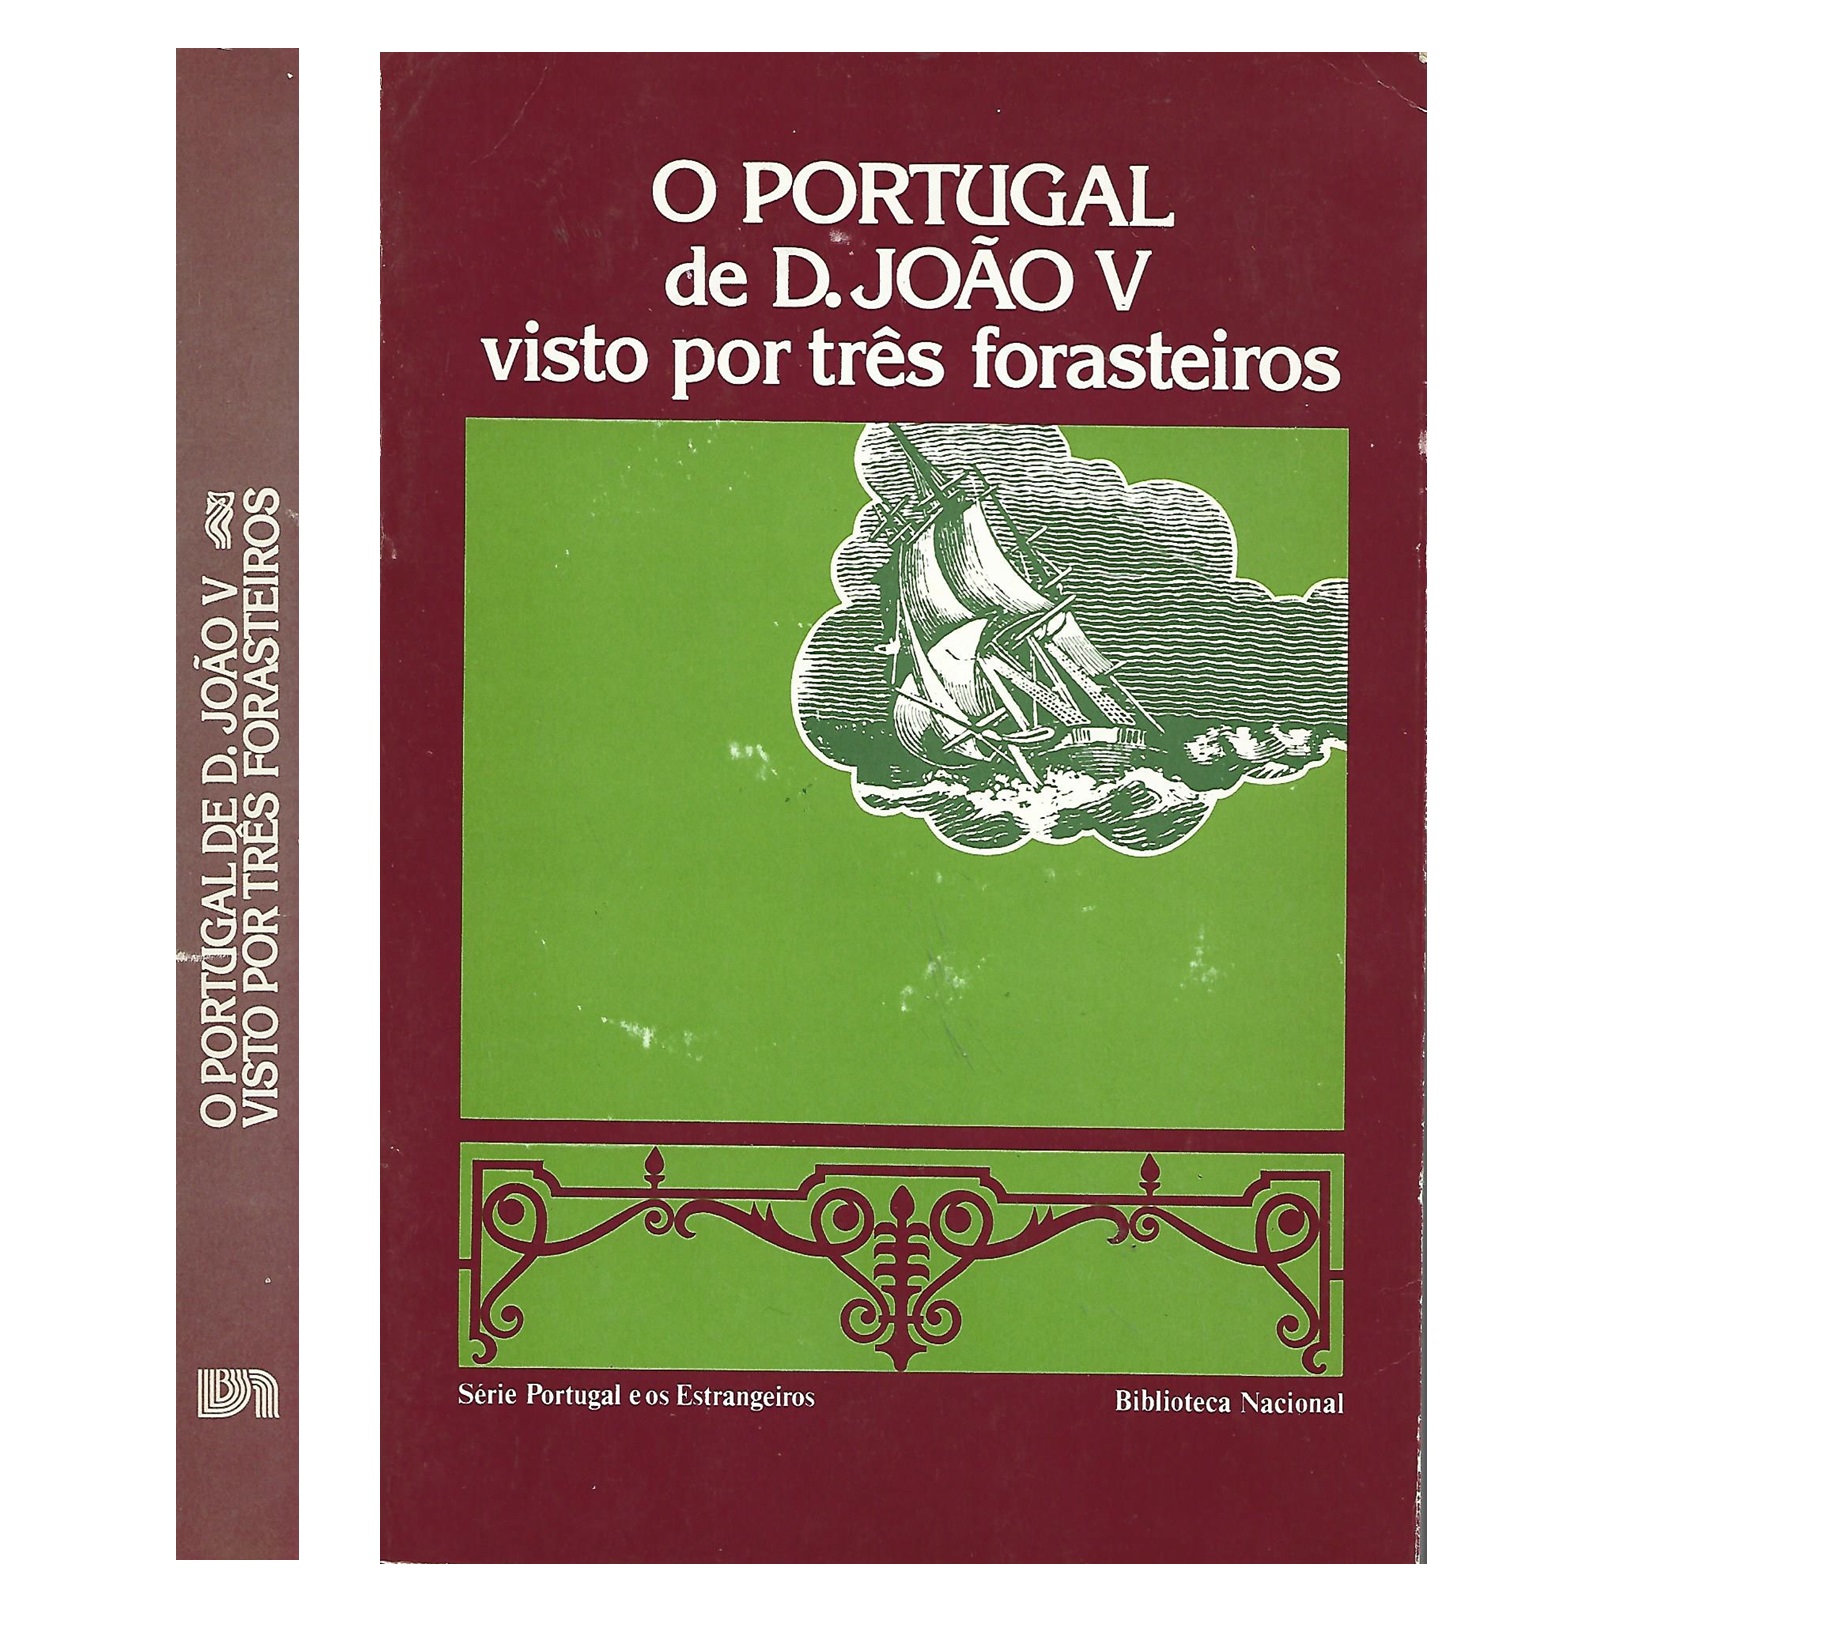 O PORTUGAL DE D. JOÃO V VISTO POR TRÊS FORASTEIROS